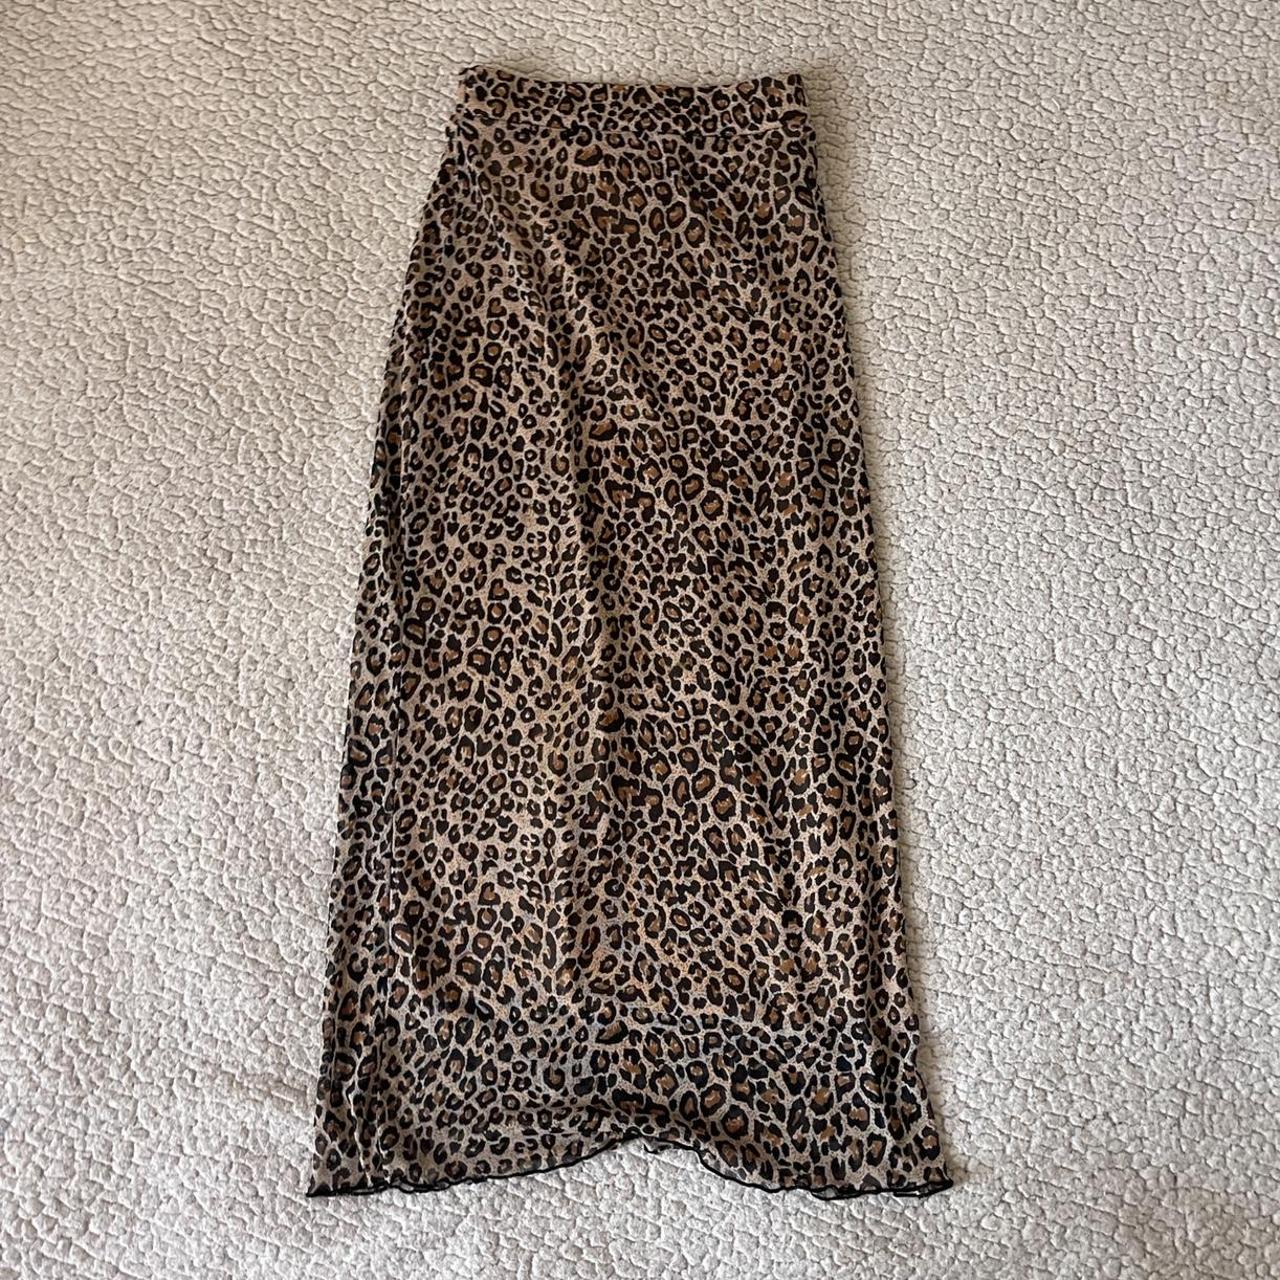 Cute little midi mesh cheetah print skirt. Has an... - Depop